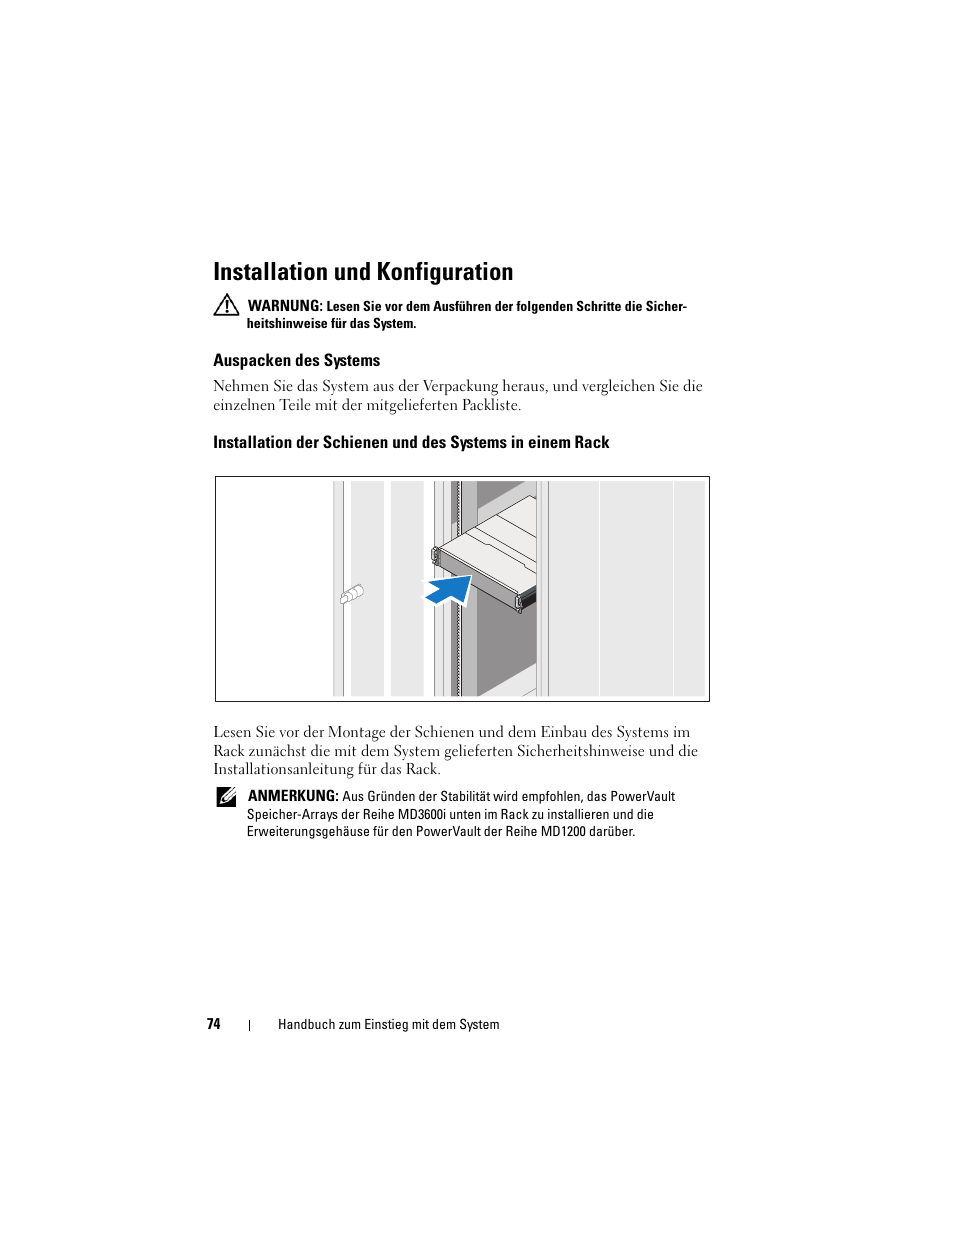 Installation und konfiguration, Auspacken des systems | Dell POWERVAULT MD3620I User Manual | Page 76 / 222